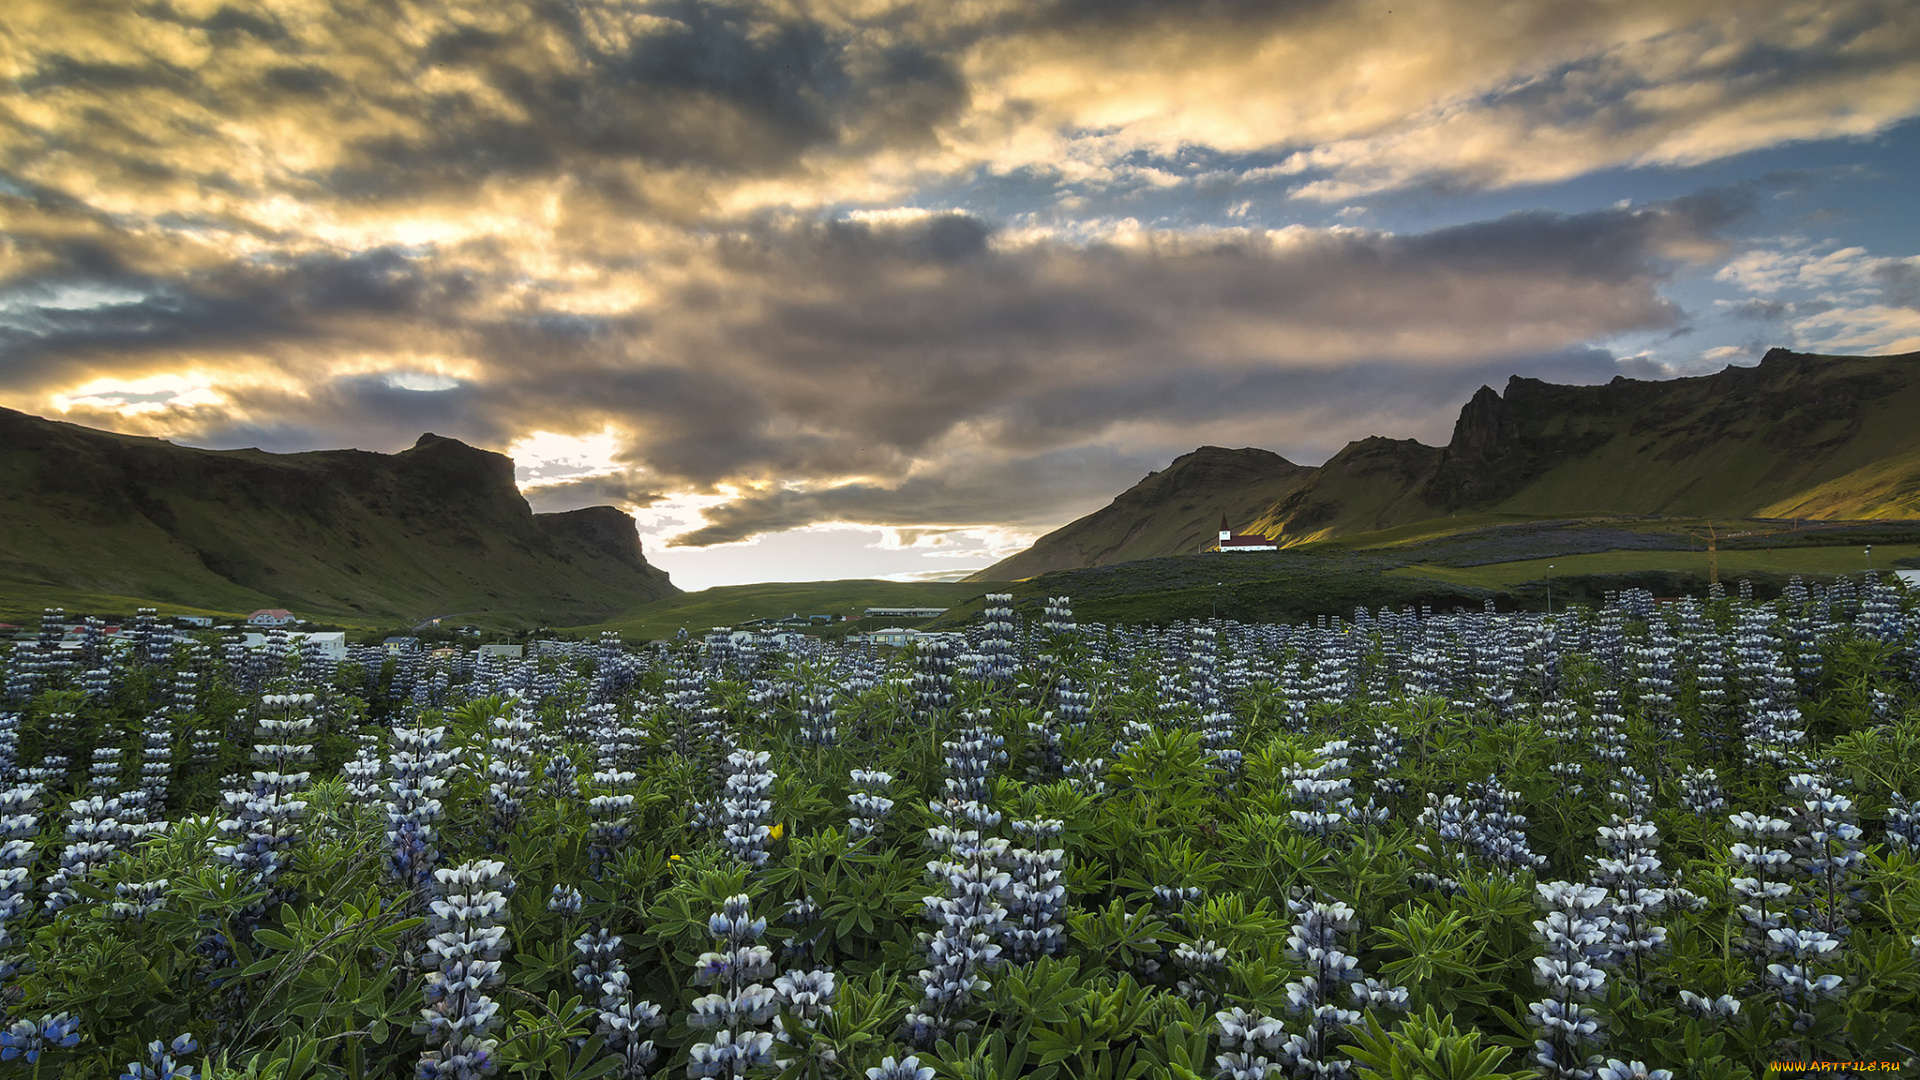 vik, myrdal, iceland, природа, луга, i, люпины, цветы, горы, исландия, вик